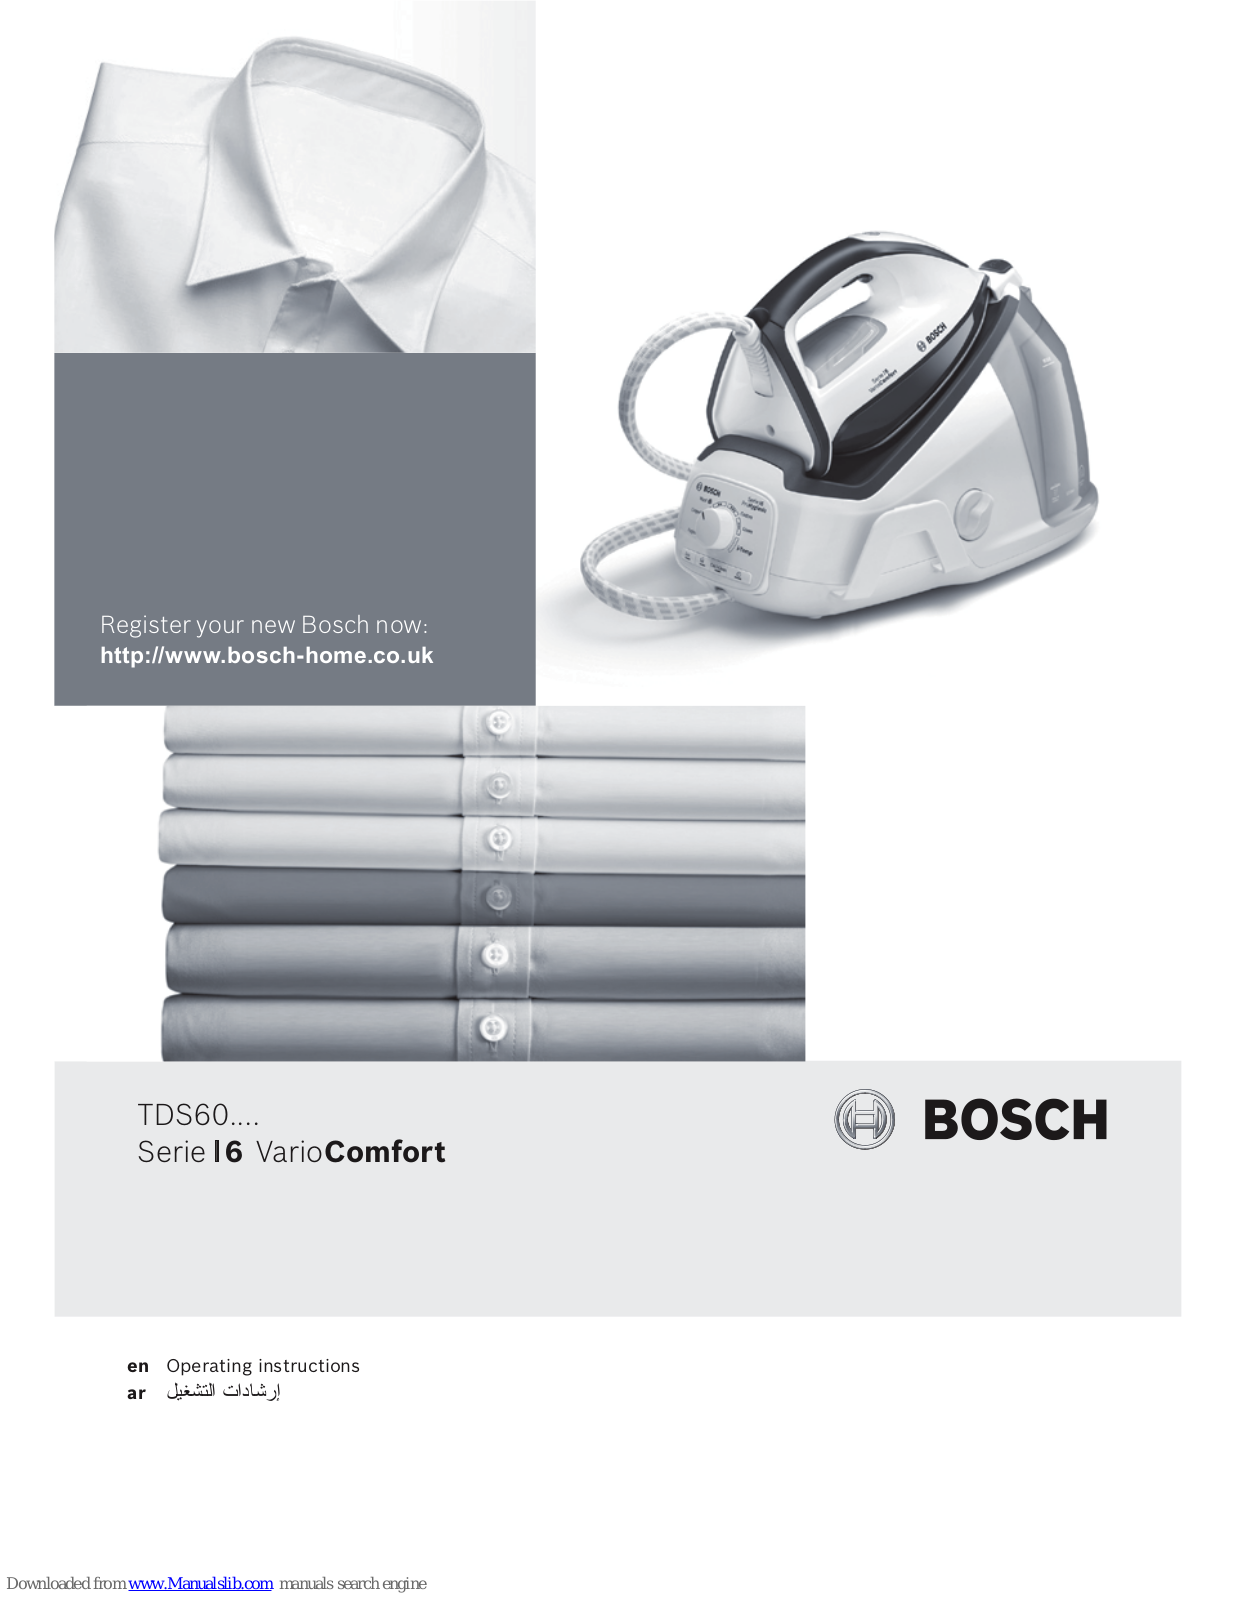 Bosch TDS60, VarioComfort I6 Operating Instructions Manual